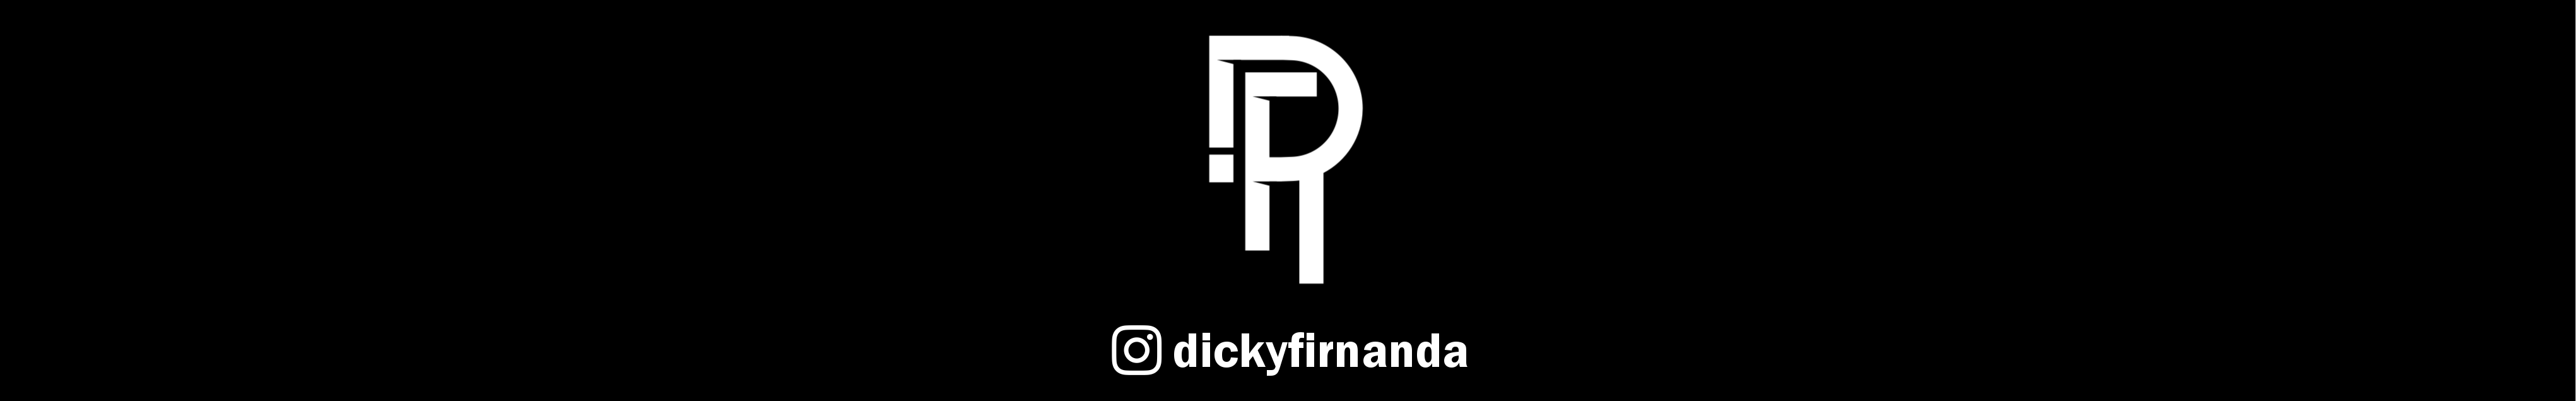 Dicky Firnanda R's profile banner